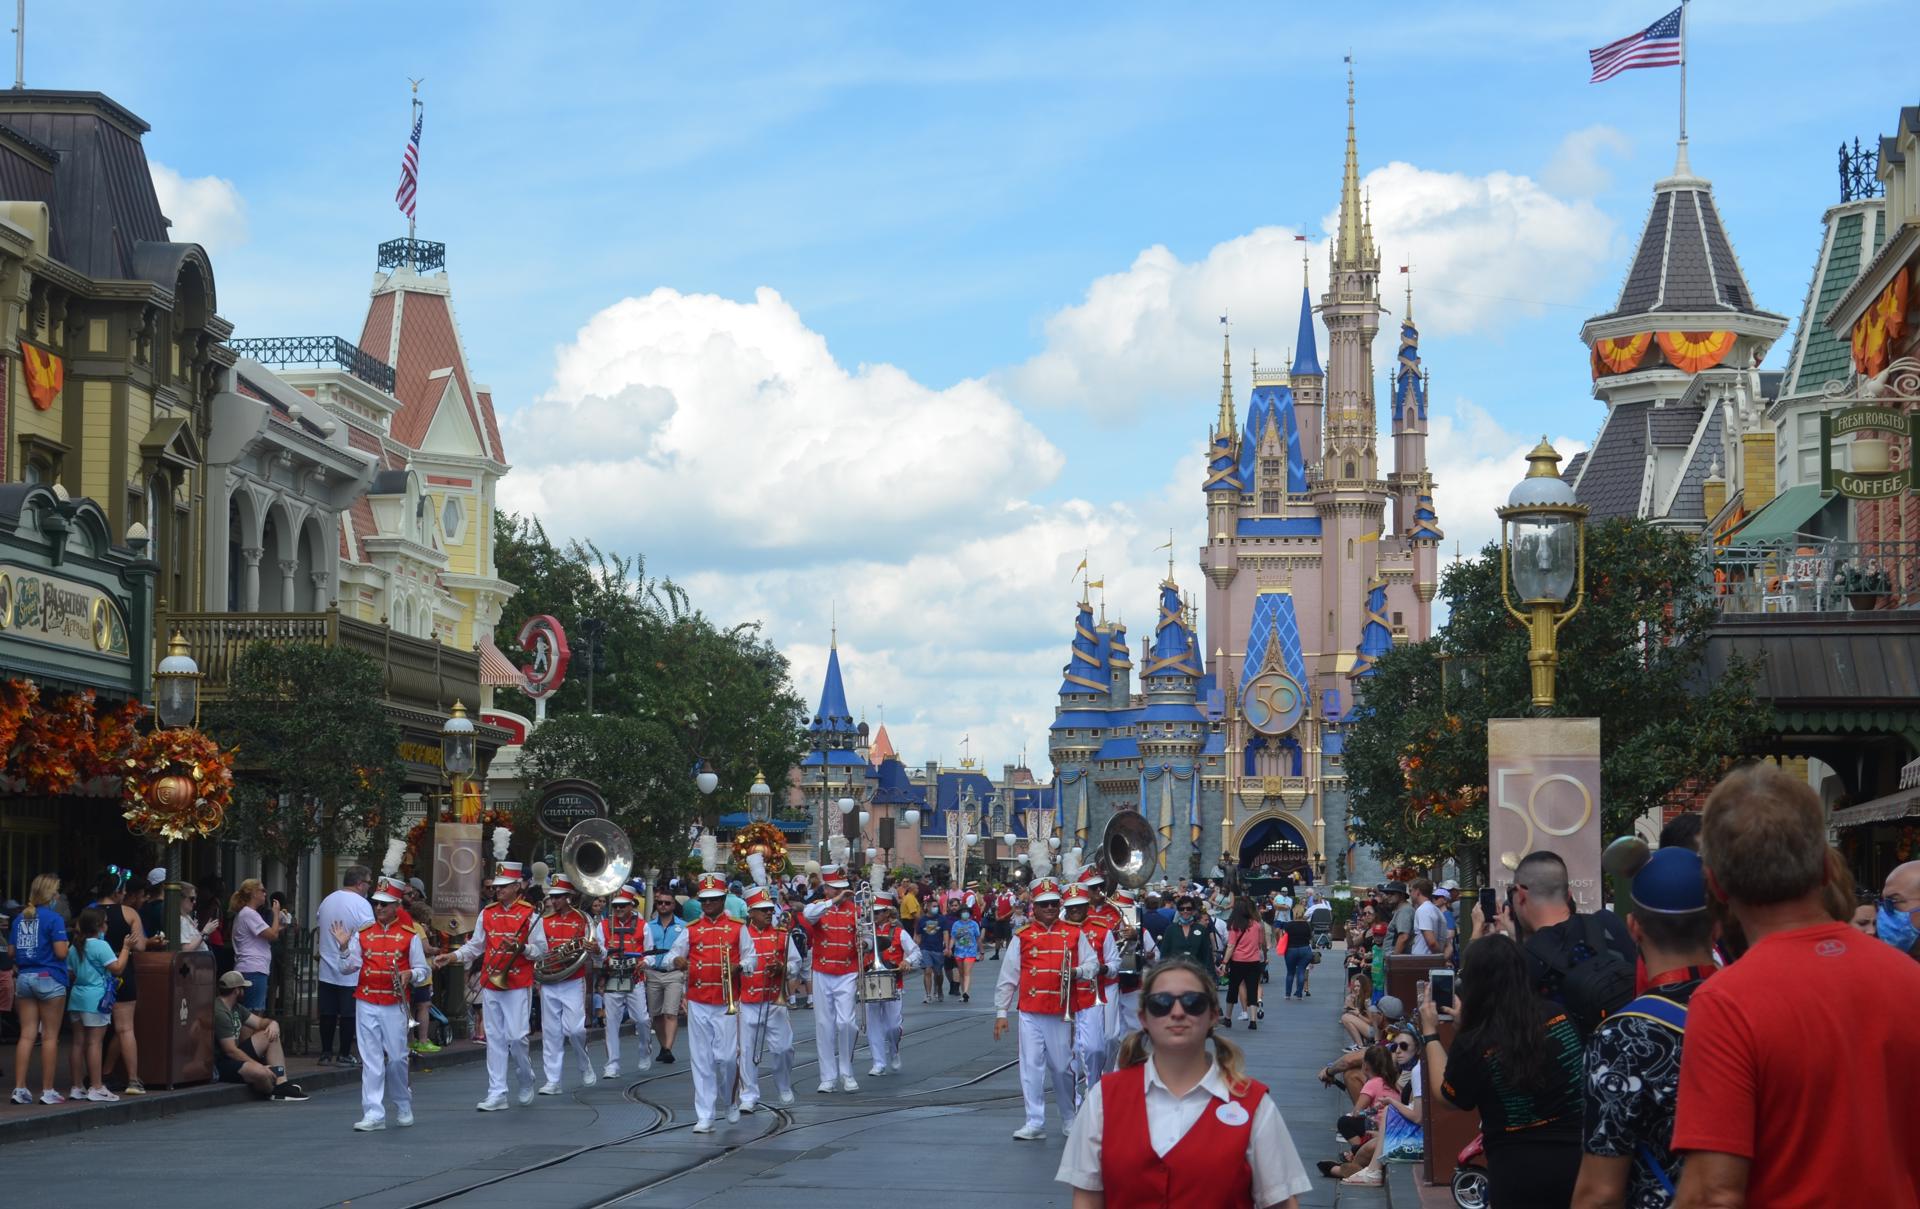 Una banda musical recorre la calle frente al castillo de la Cenicienta en el parque temático de Walt Disney World Magic Kingdom en Lake Buena Vista, Florida (EE.UU.), en una fotografía de archivo. EFE/Álvaro Blanco